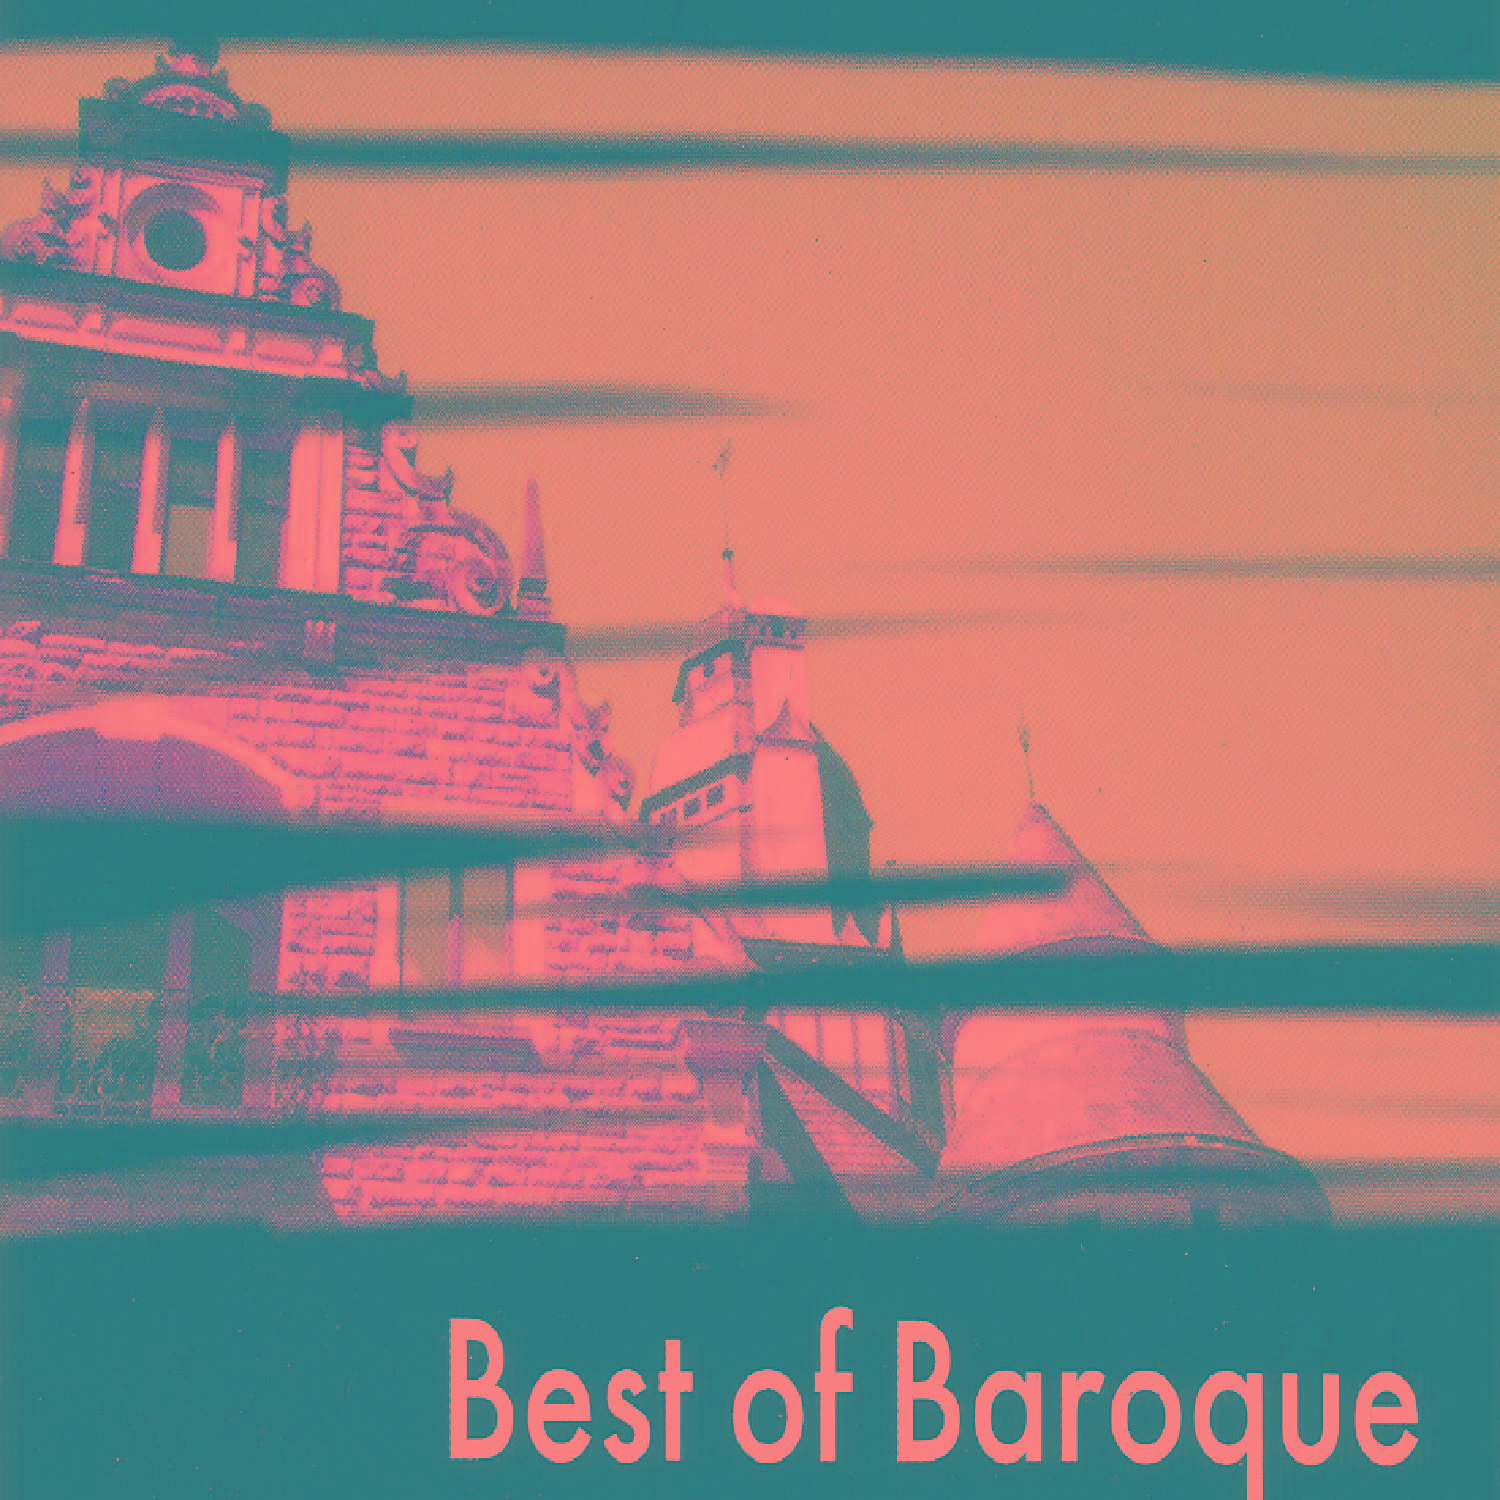 Best of Baroque